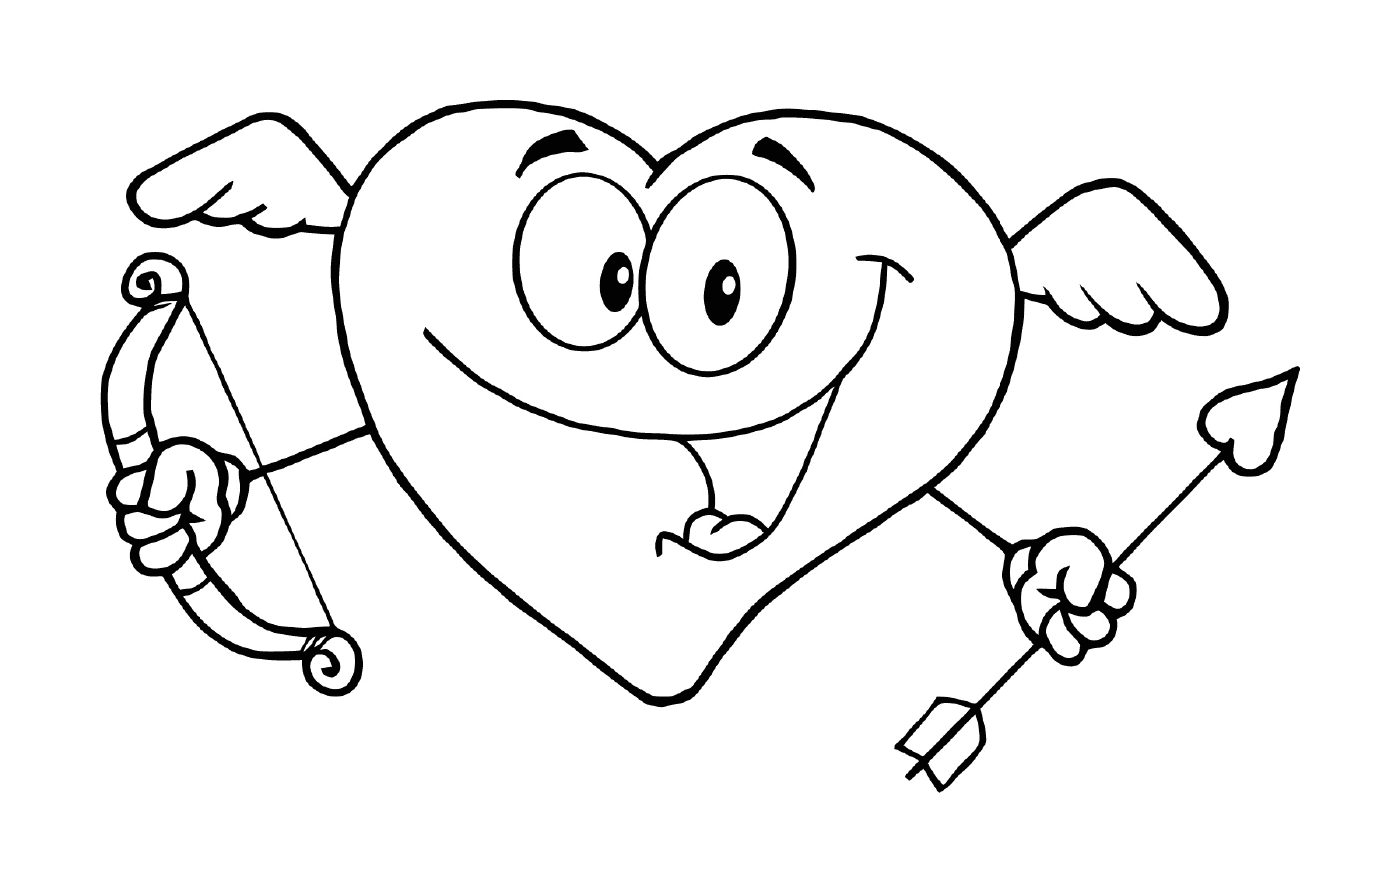   Un dessin animé d'un cœur souriant 